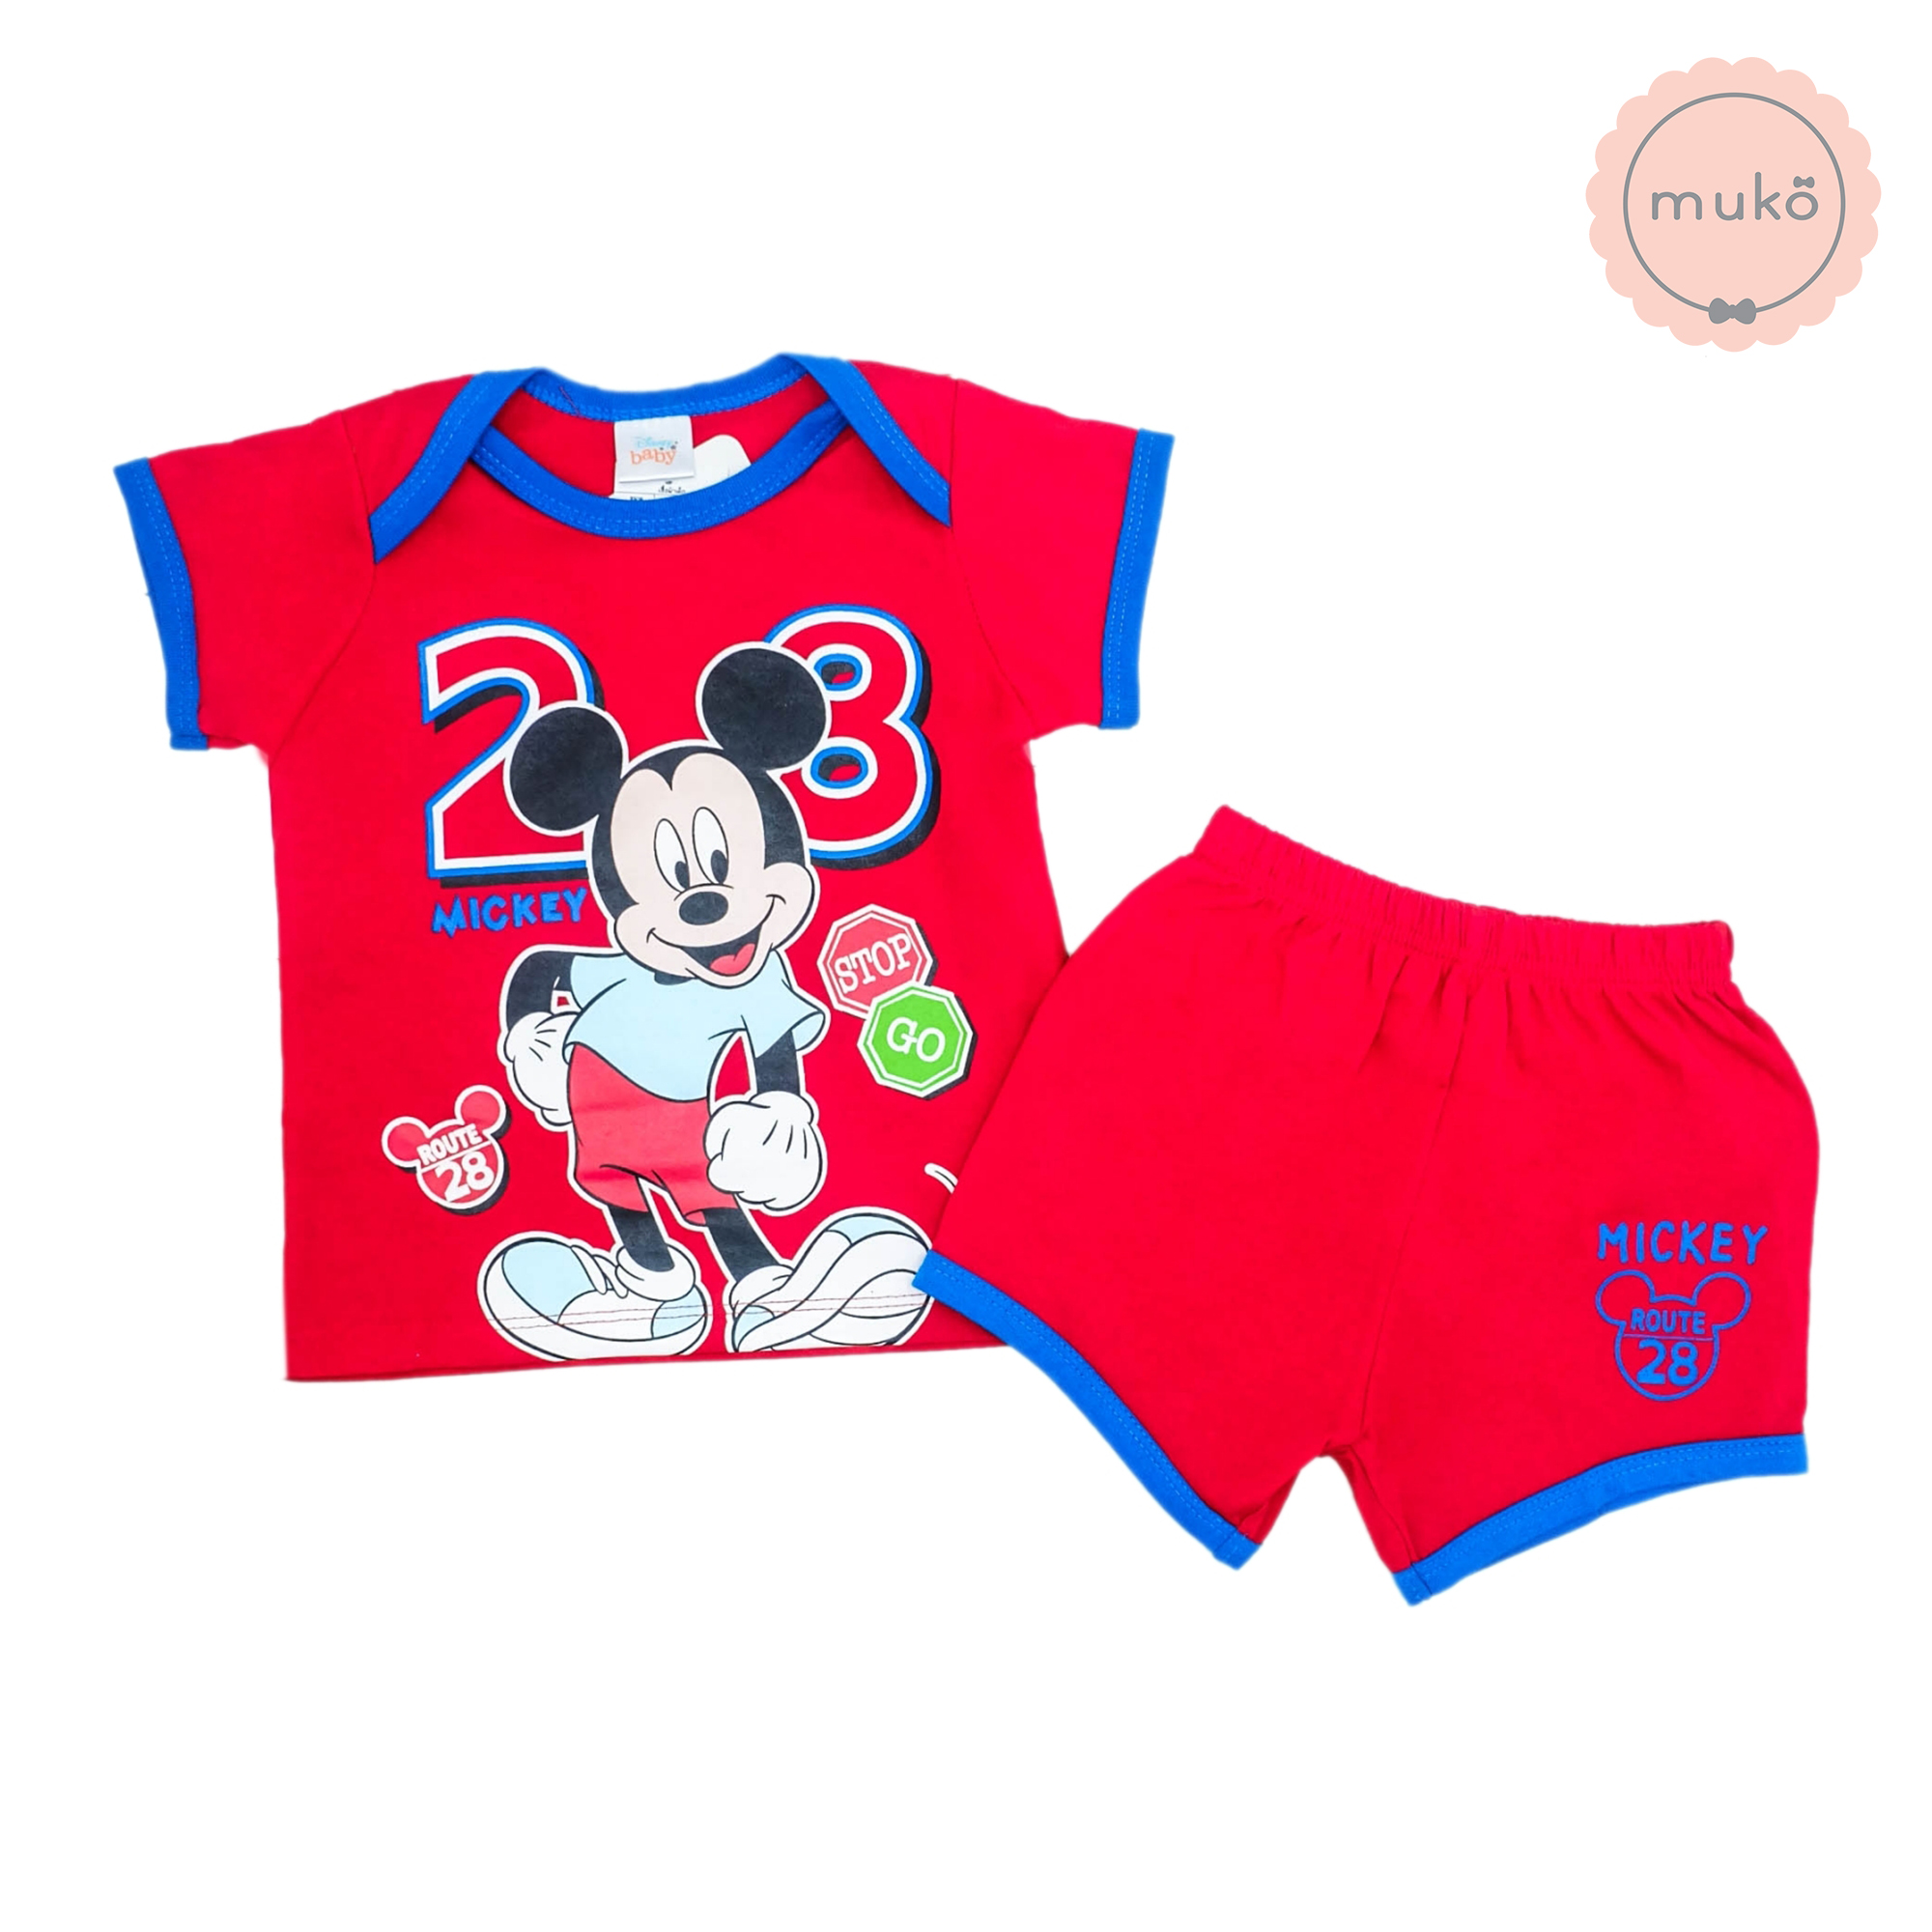 ชุดเบบี้ 3-6 เดือน แขนสั้น-ขาสั้น (S=70) DMK017-10-L-Red S ลายมิกกี้ เมาส์ Mickey Mouse